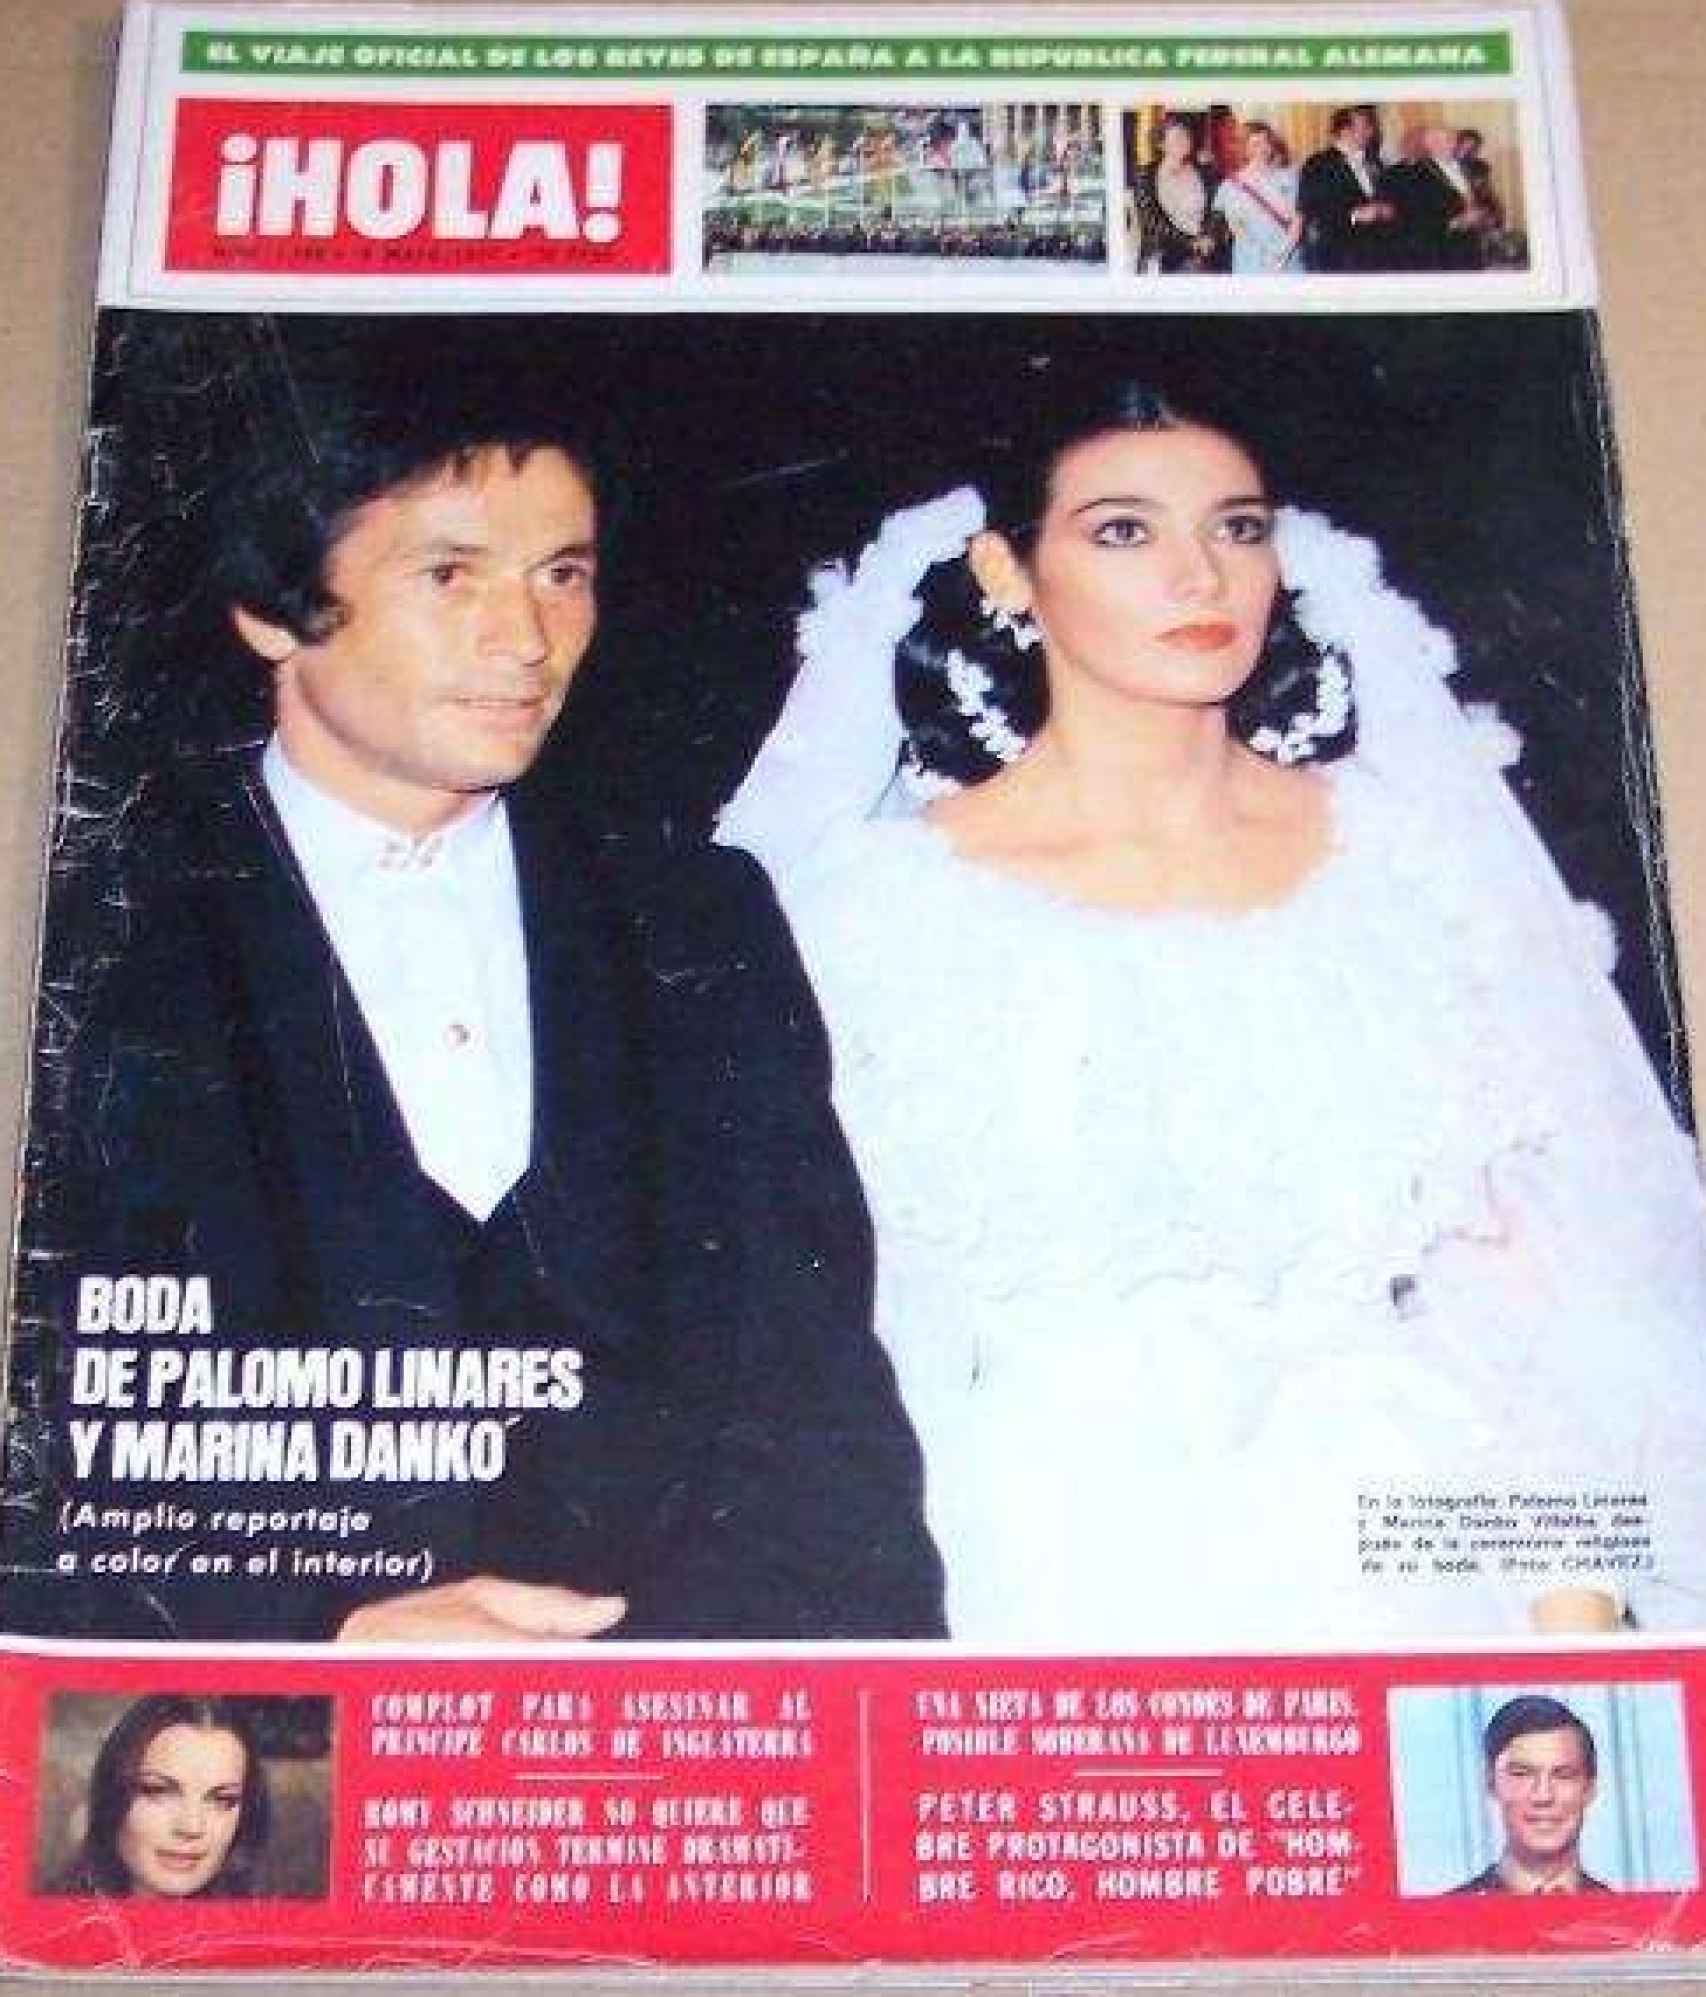 Portada de la revista Hola con la boda de Palomo Linares y Marina Danko.